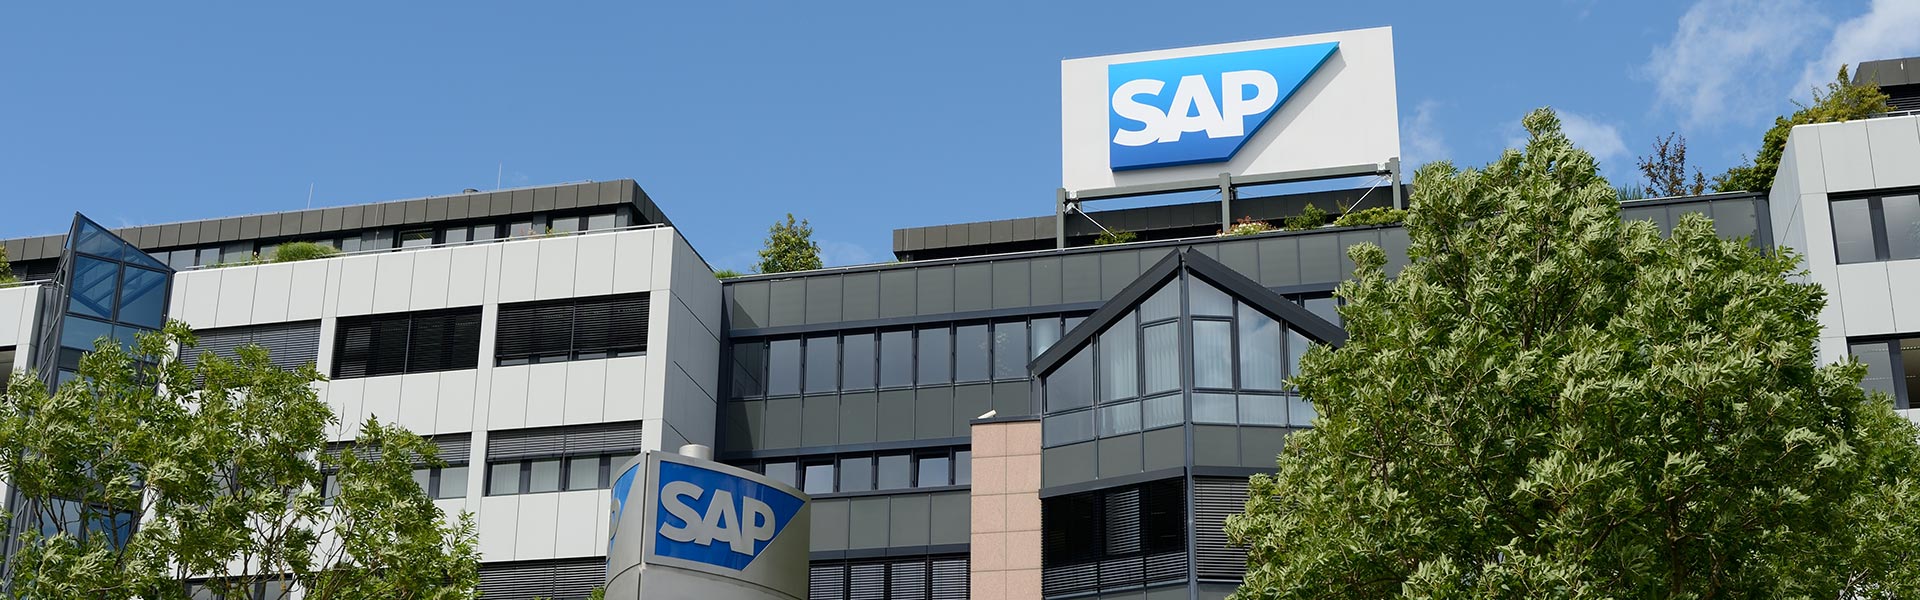 Pledge to Flex : L’avenir du travail chez SAP sera 100% flexible et basé sur la confiance